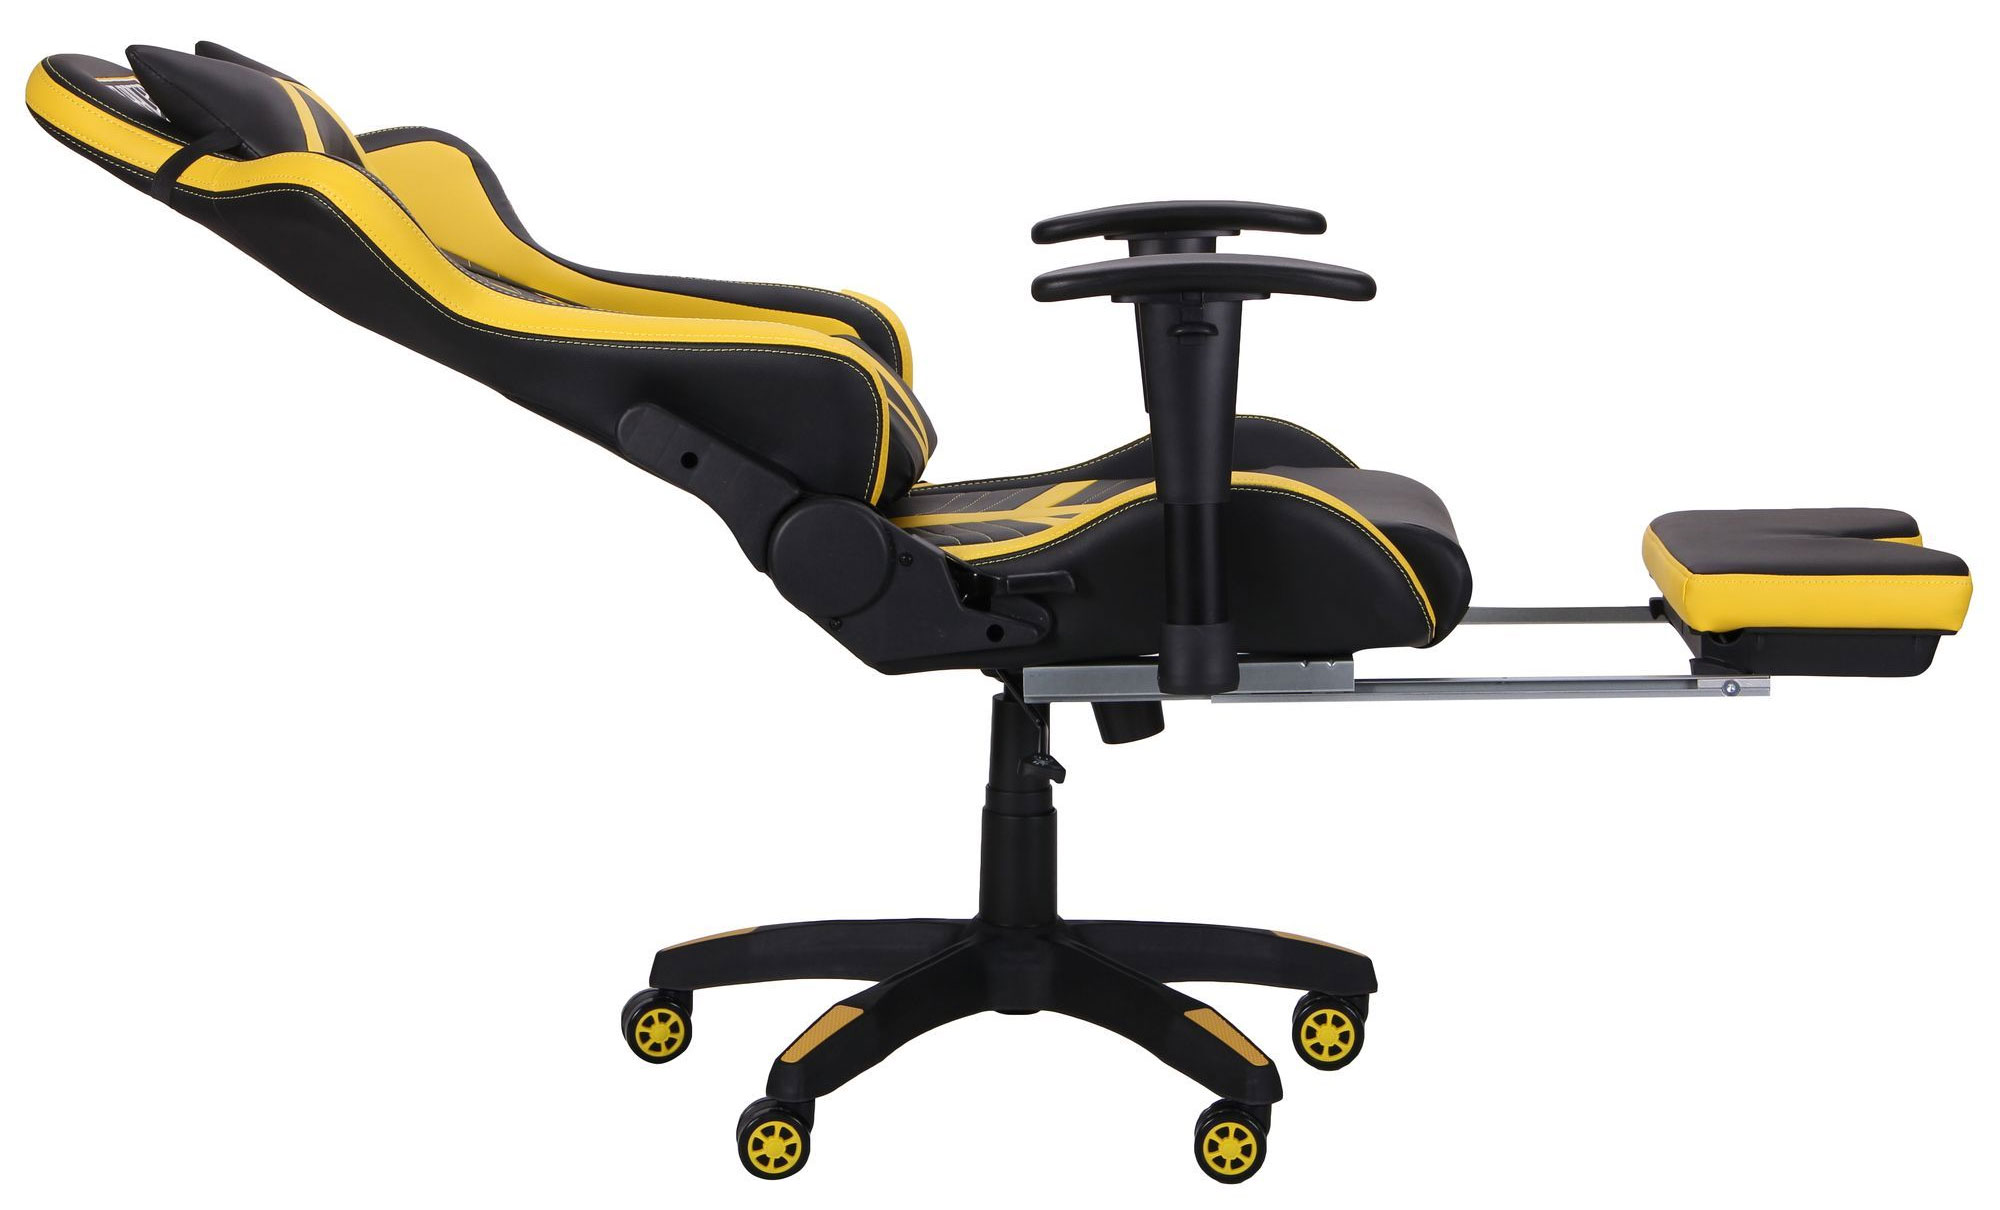 Геймерське крісло з підставкою під ноги AMF VR Racer Original